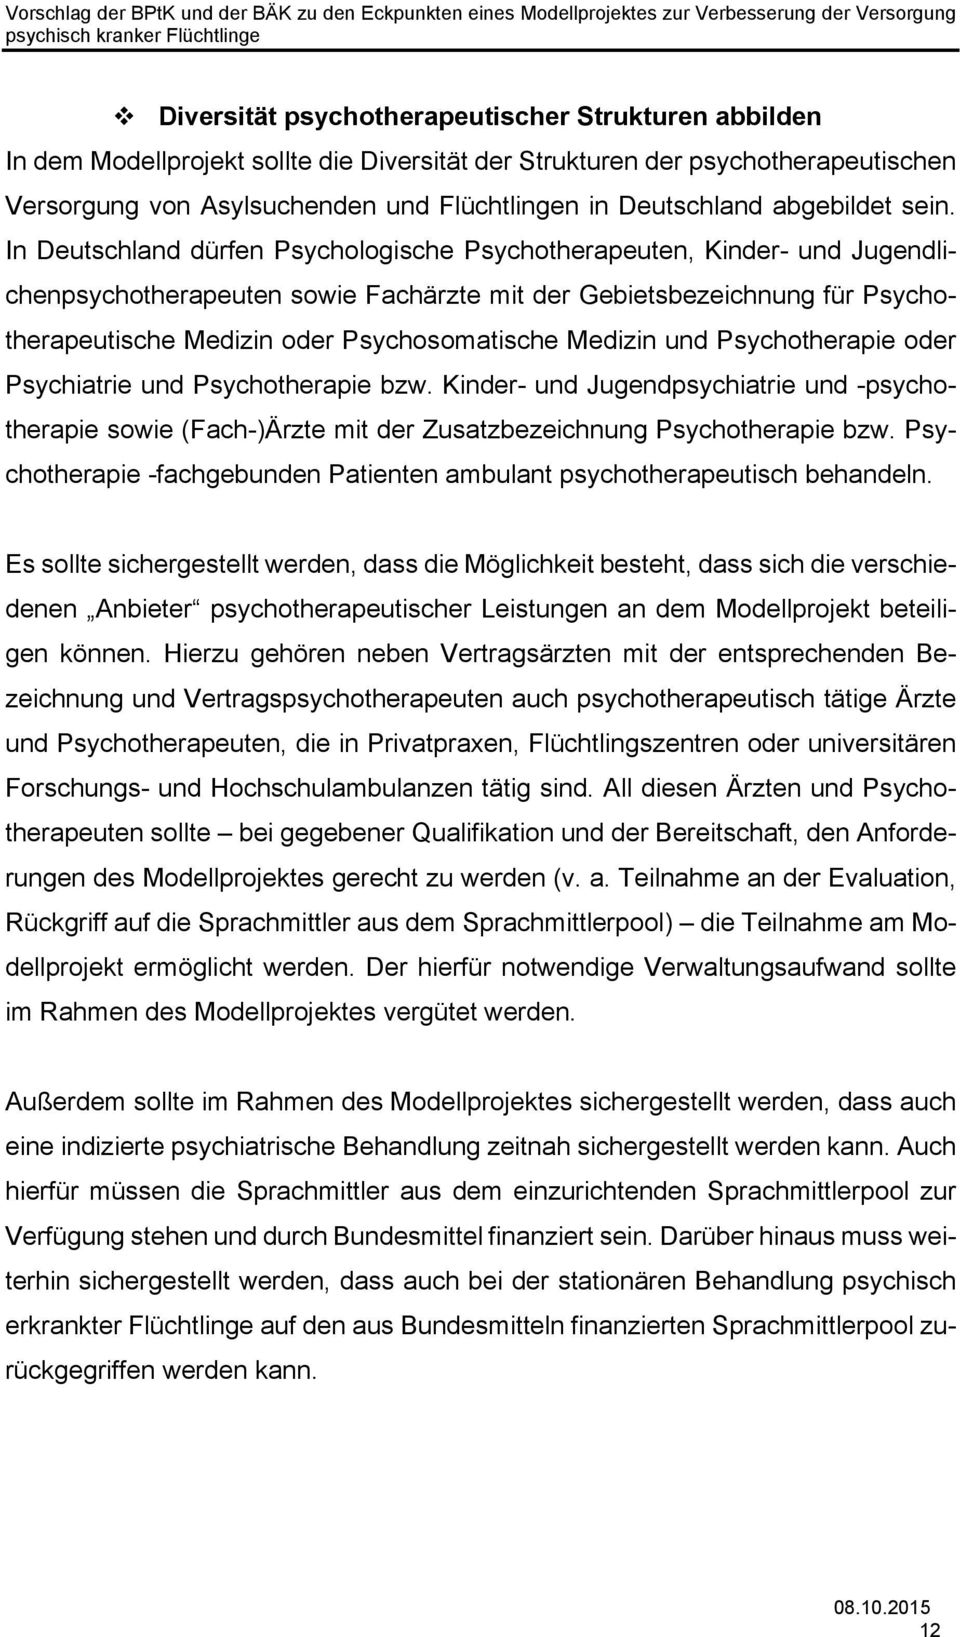 In Deutschland dürfen Psychologische Psychotherapeuten, Kinder- und Jugendlichenpsychotherapeuten sowie Fachärzte mit der Gebietsbezeichnung für Psychotherapeutische Medizin oder Psychosomatische